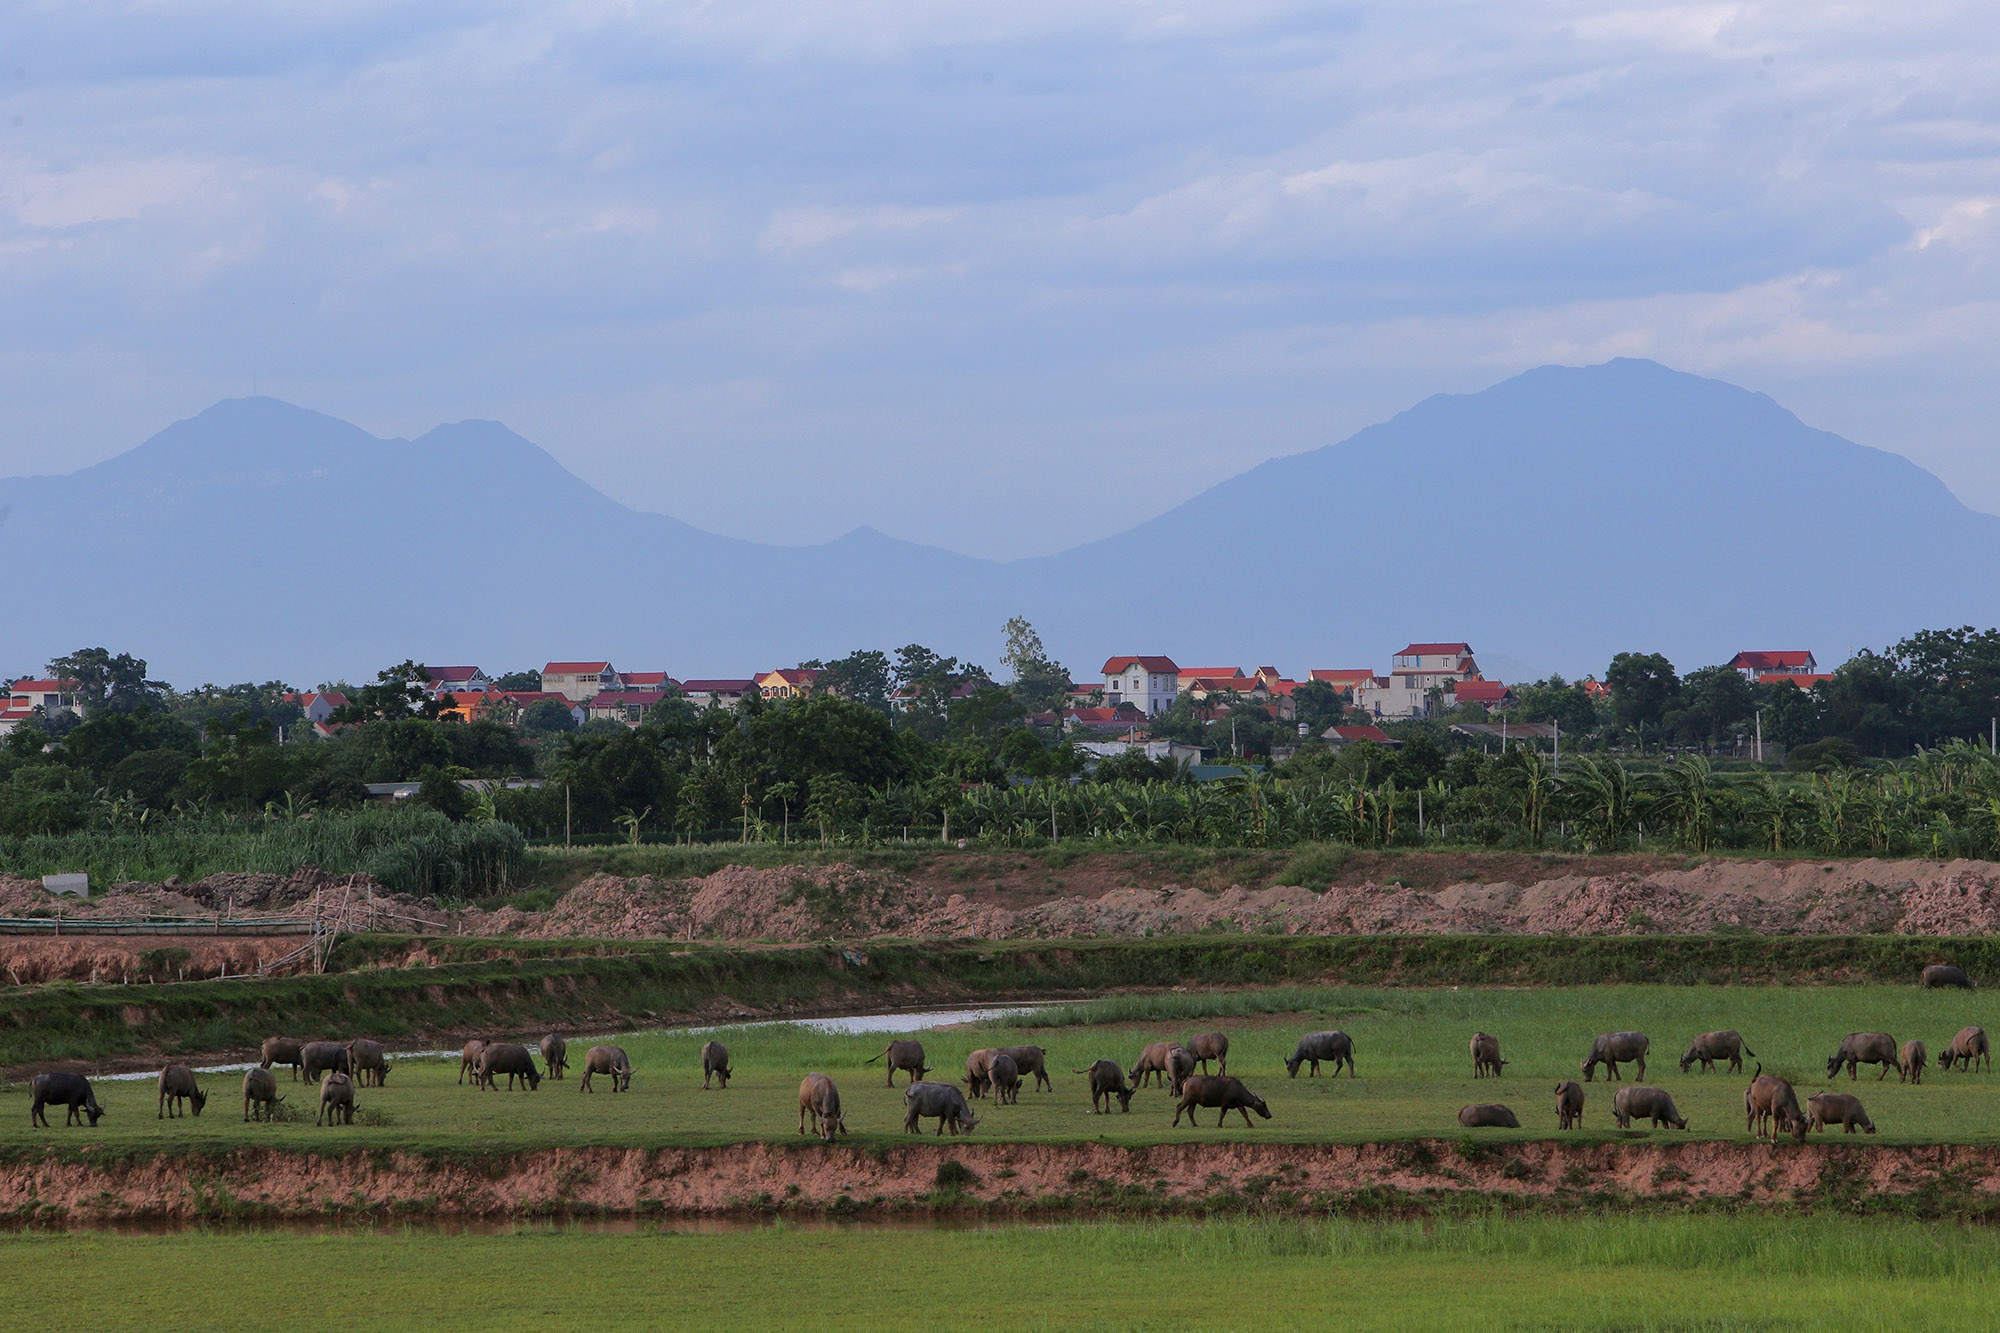 Phong cảnh bình yên nhìn từ những triền đê ở Hà Nội - 9